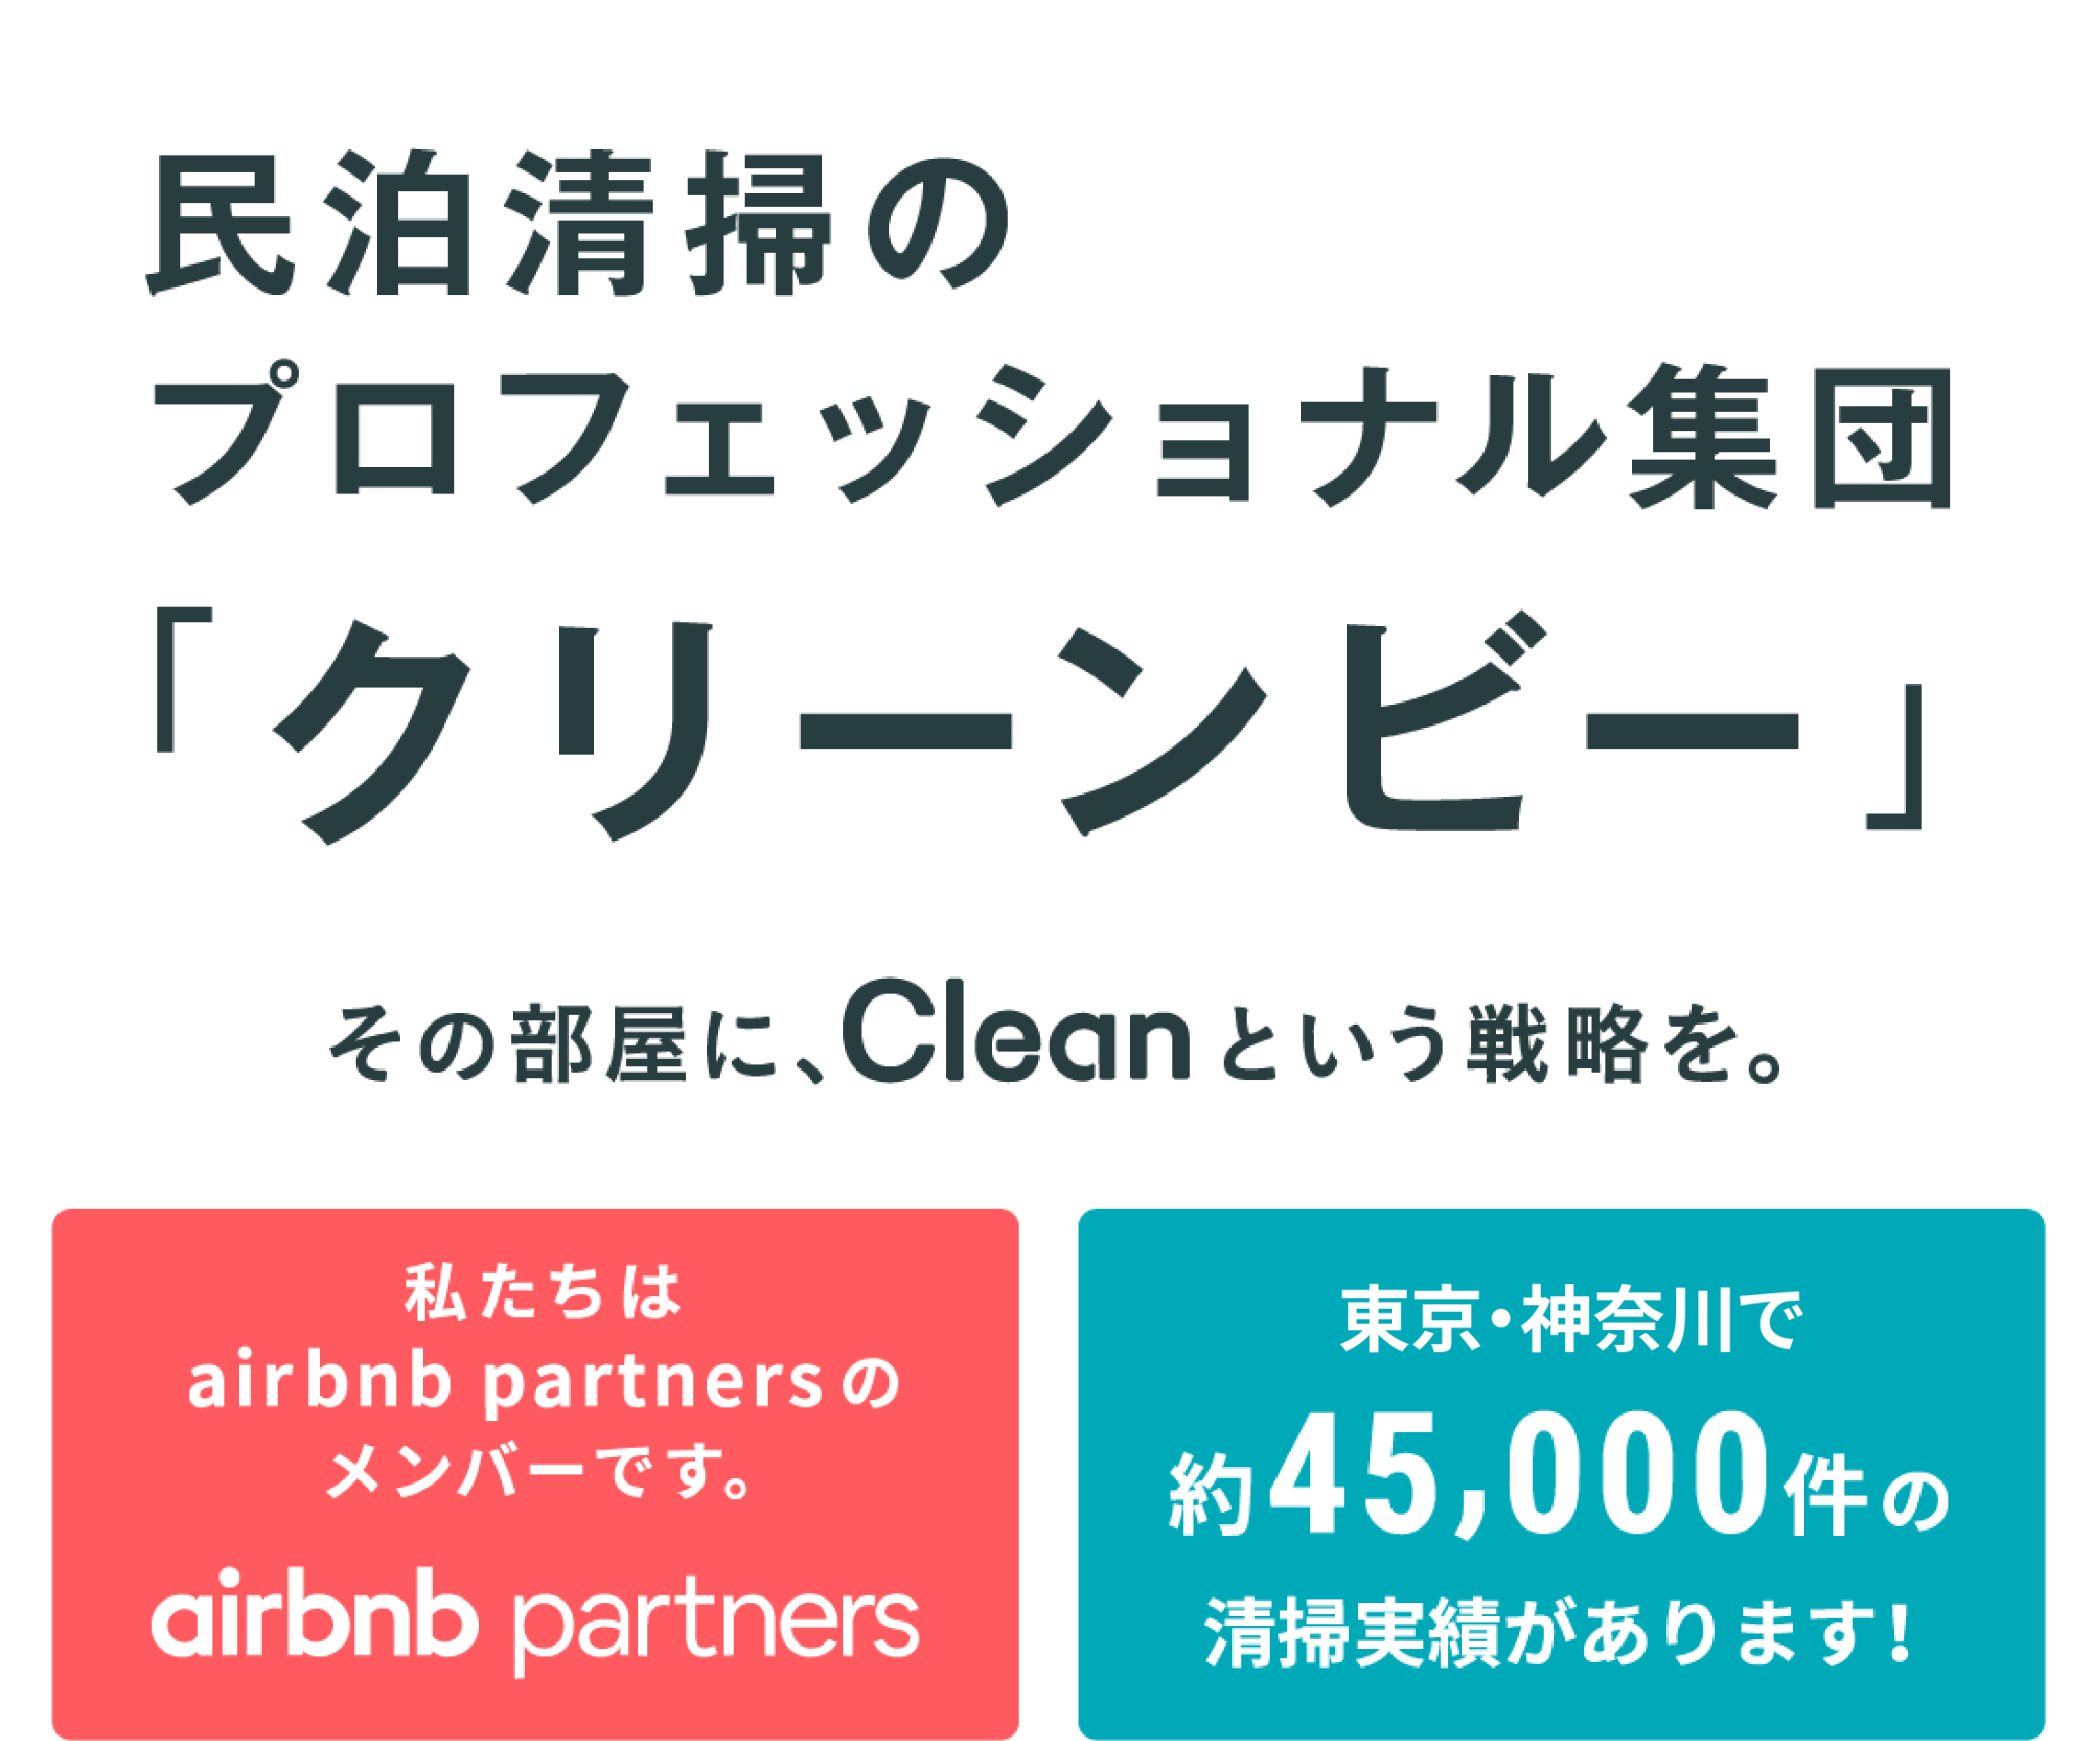 民泊清掃のプロフェッショナル集団「クリーンビー」その部屋に、Cleanという戦略を。大阪市内で約45,000件の清掃実績があります！